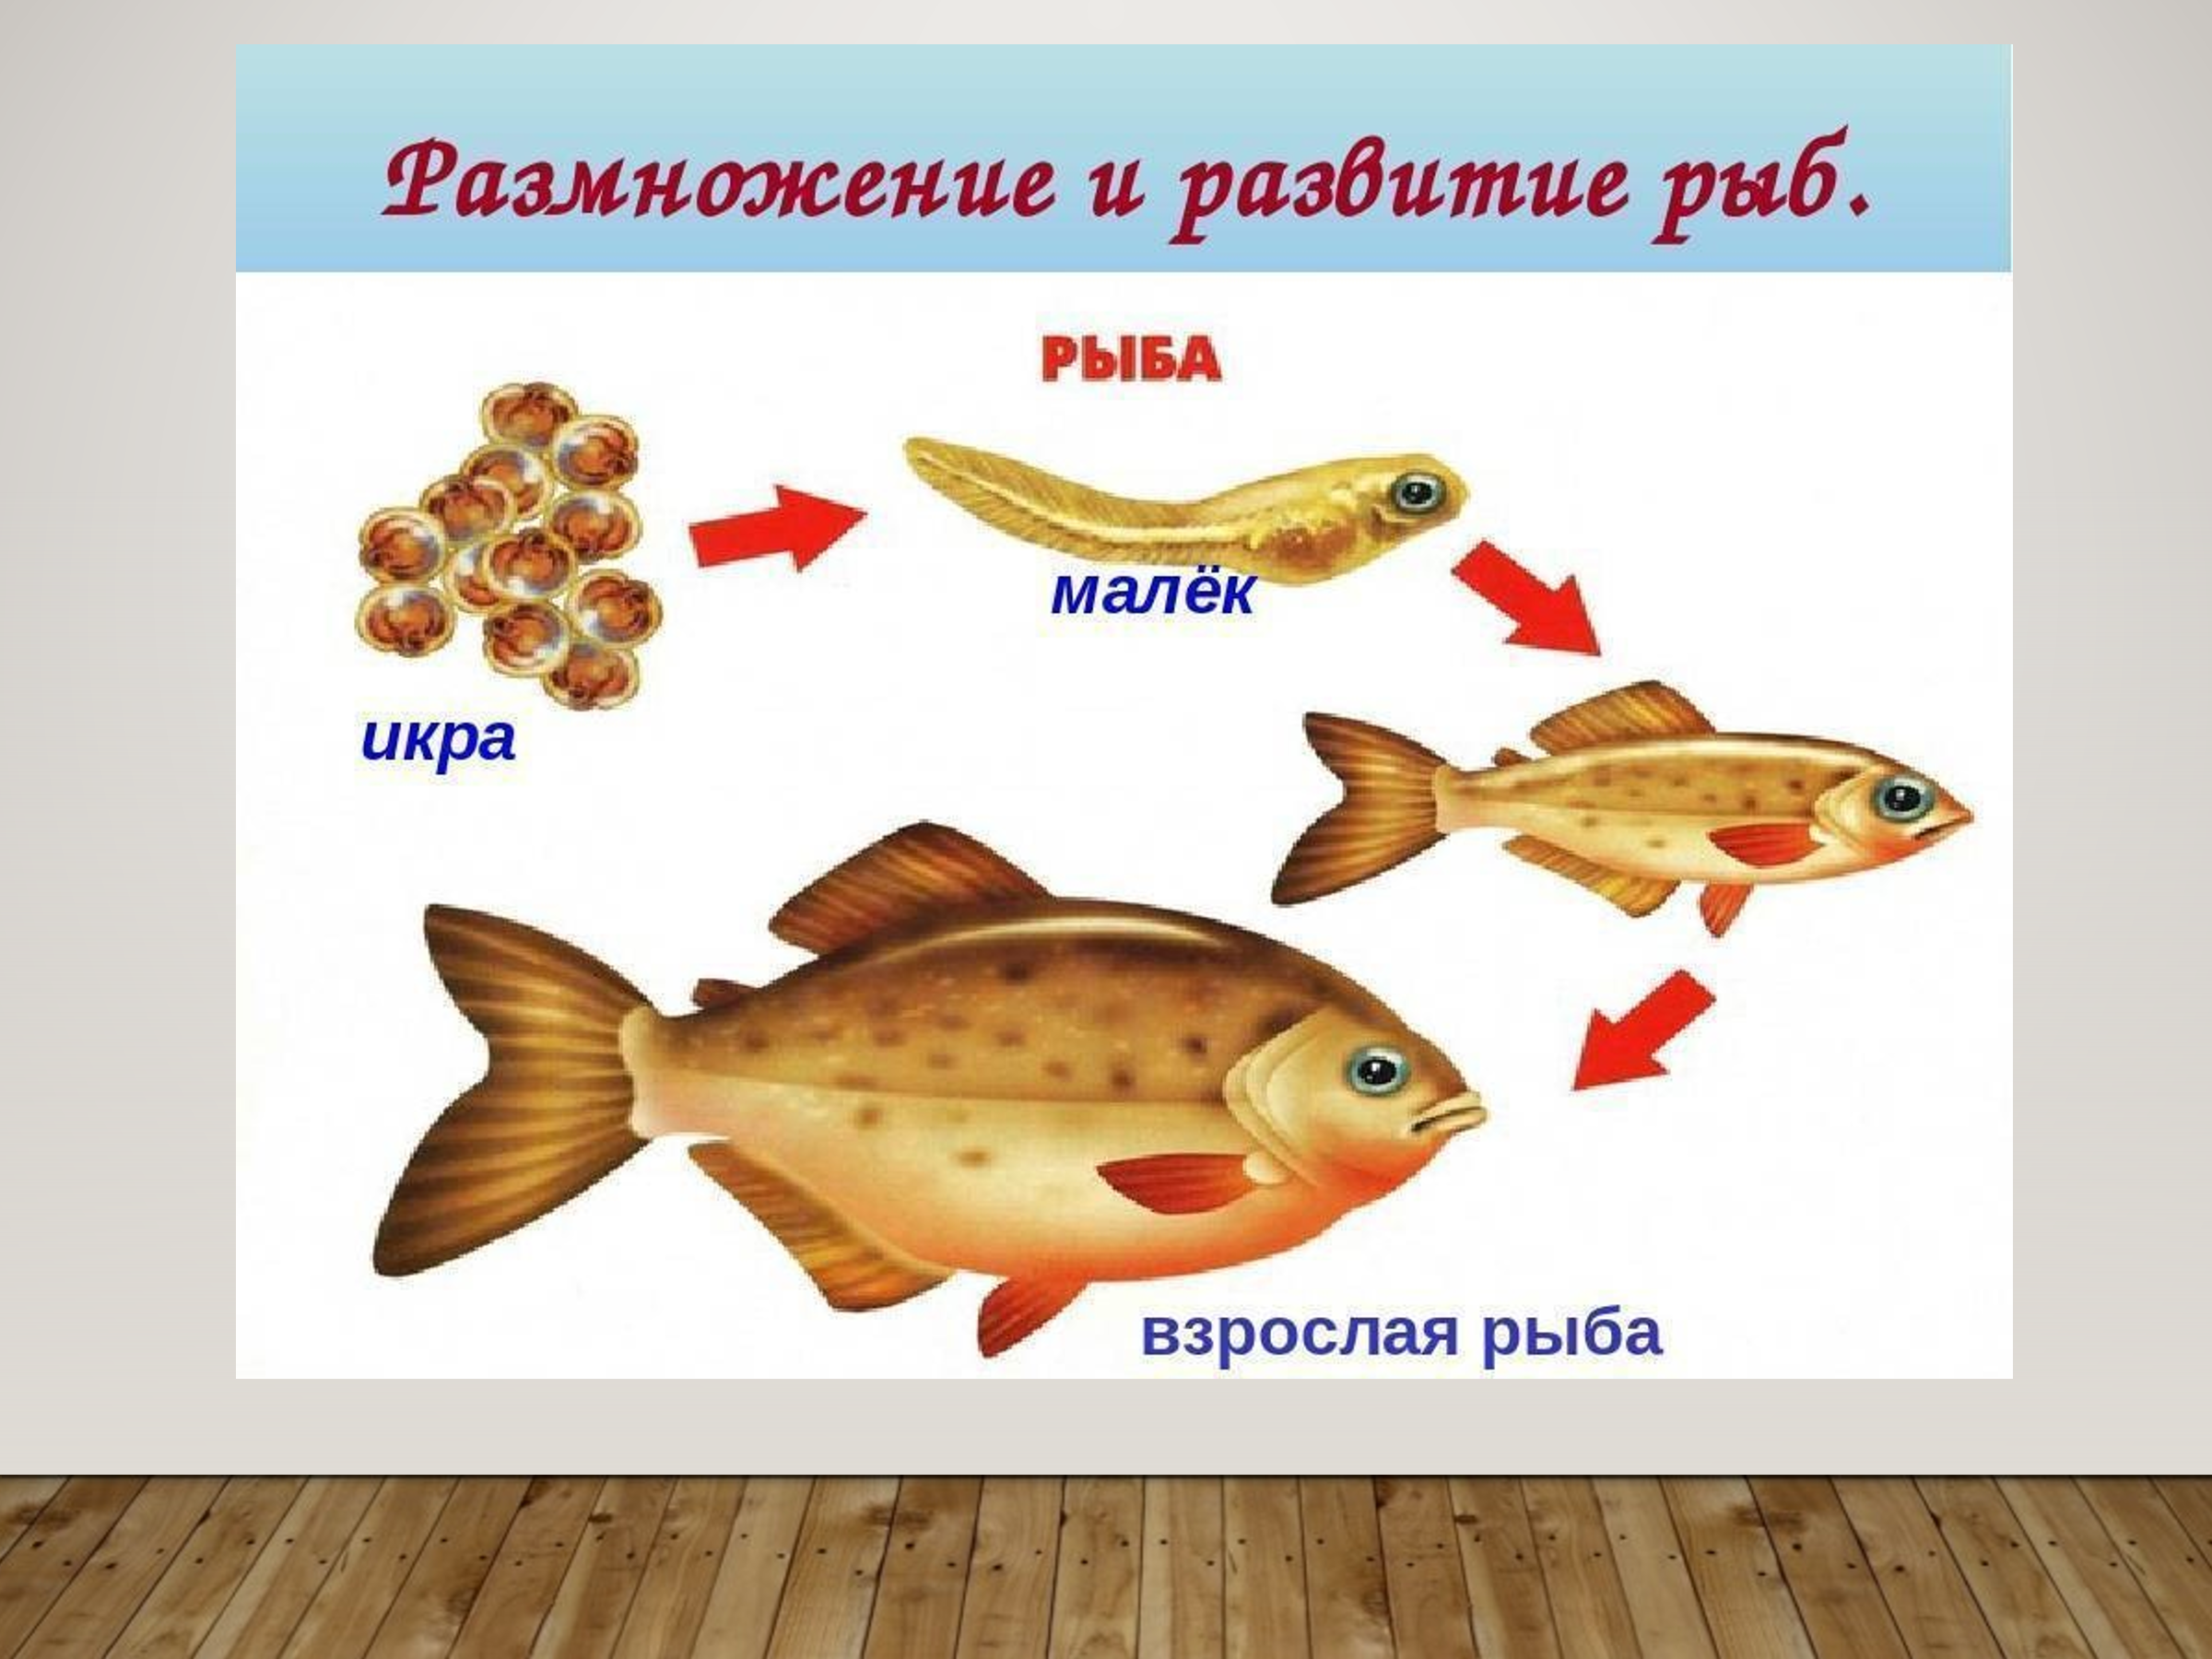 Размножение животных рыбы. Размножение рыб схема 3 класс. Жизненный цикл рыбы схема. Стадии развития рыбы схема. Стадии развития рыбы в картинках.